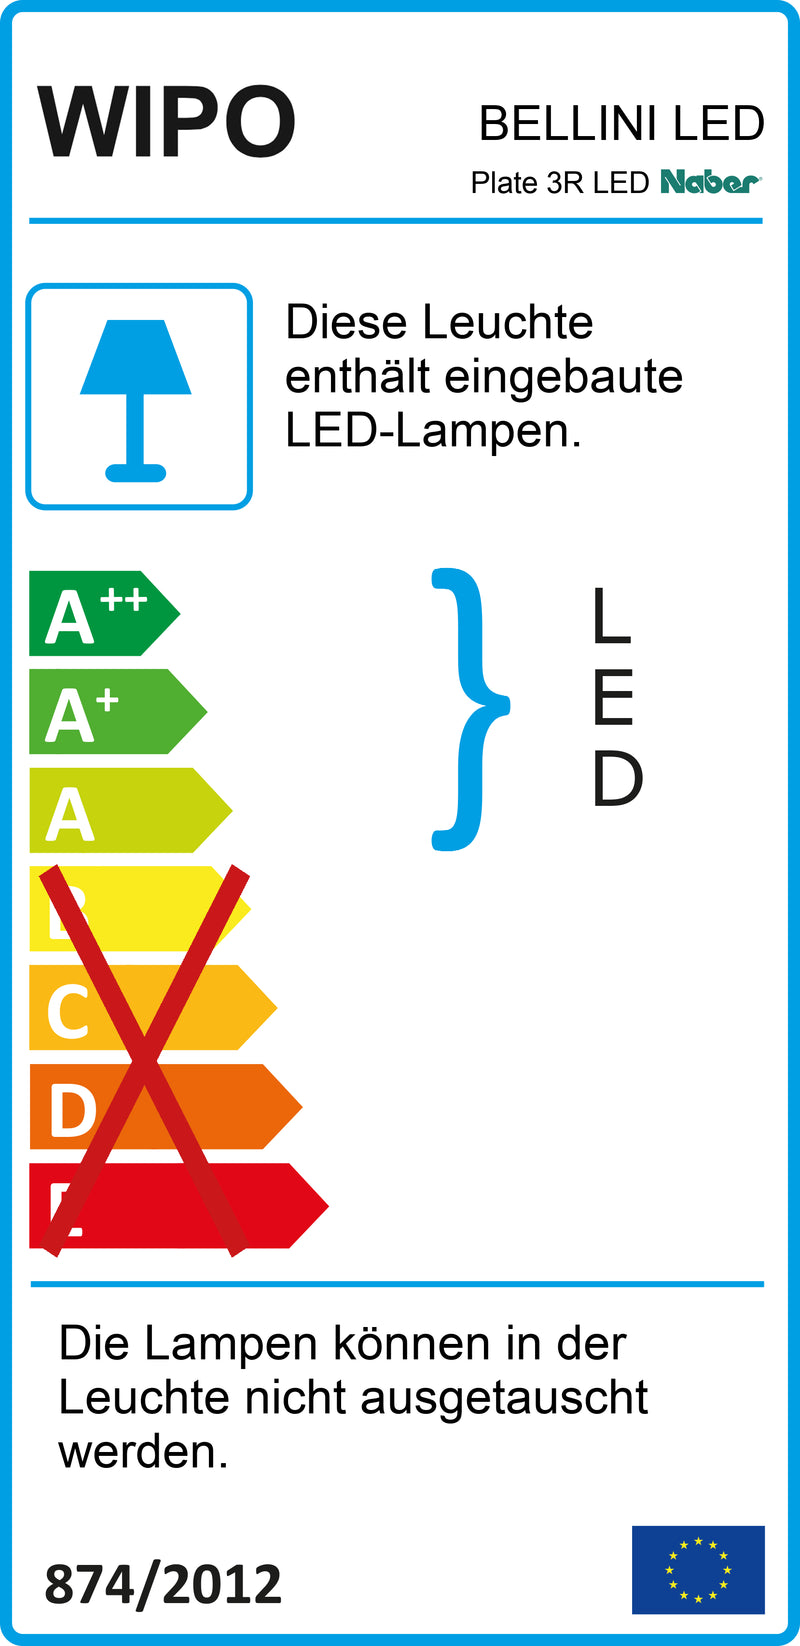 E-Label zu Zeichnung zu Plate 3R LED als Variante edelstahlfarbig von Naber GmbH in der Kategorie Lichttechnik in Österreich auf conceptshop.at